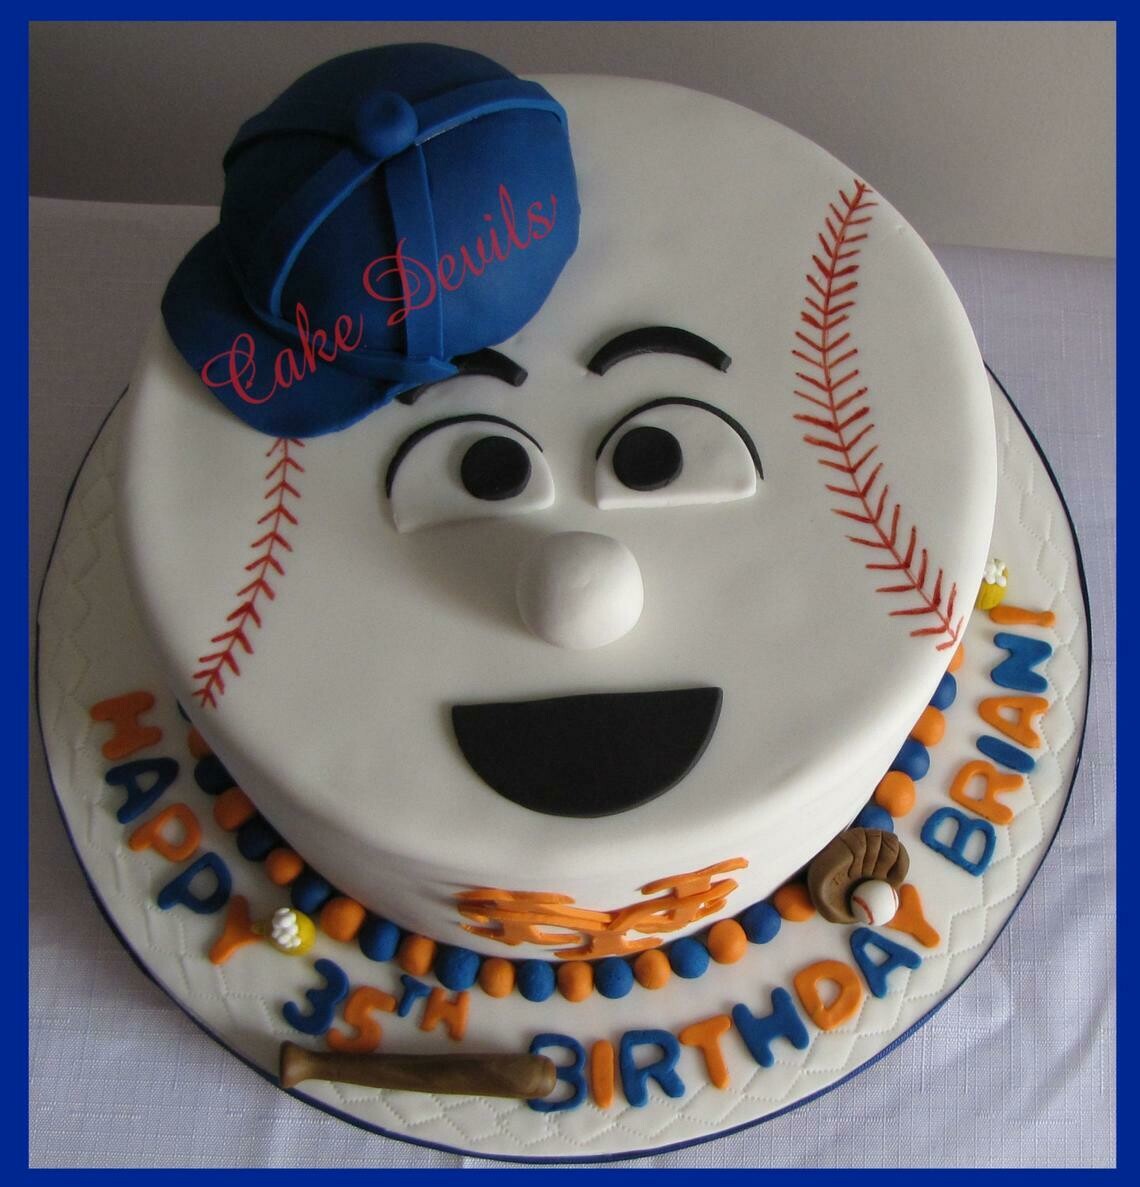 Baseball Face Cake Topper Kit and Baseball Cake Decorations, Mr Met cake